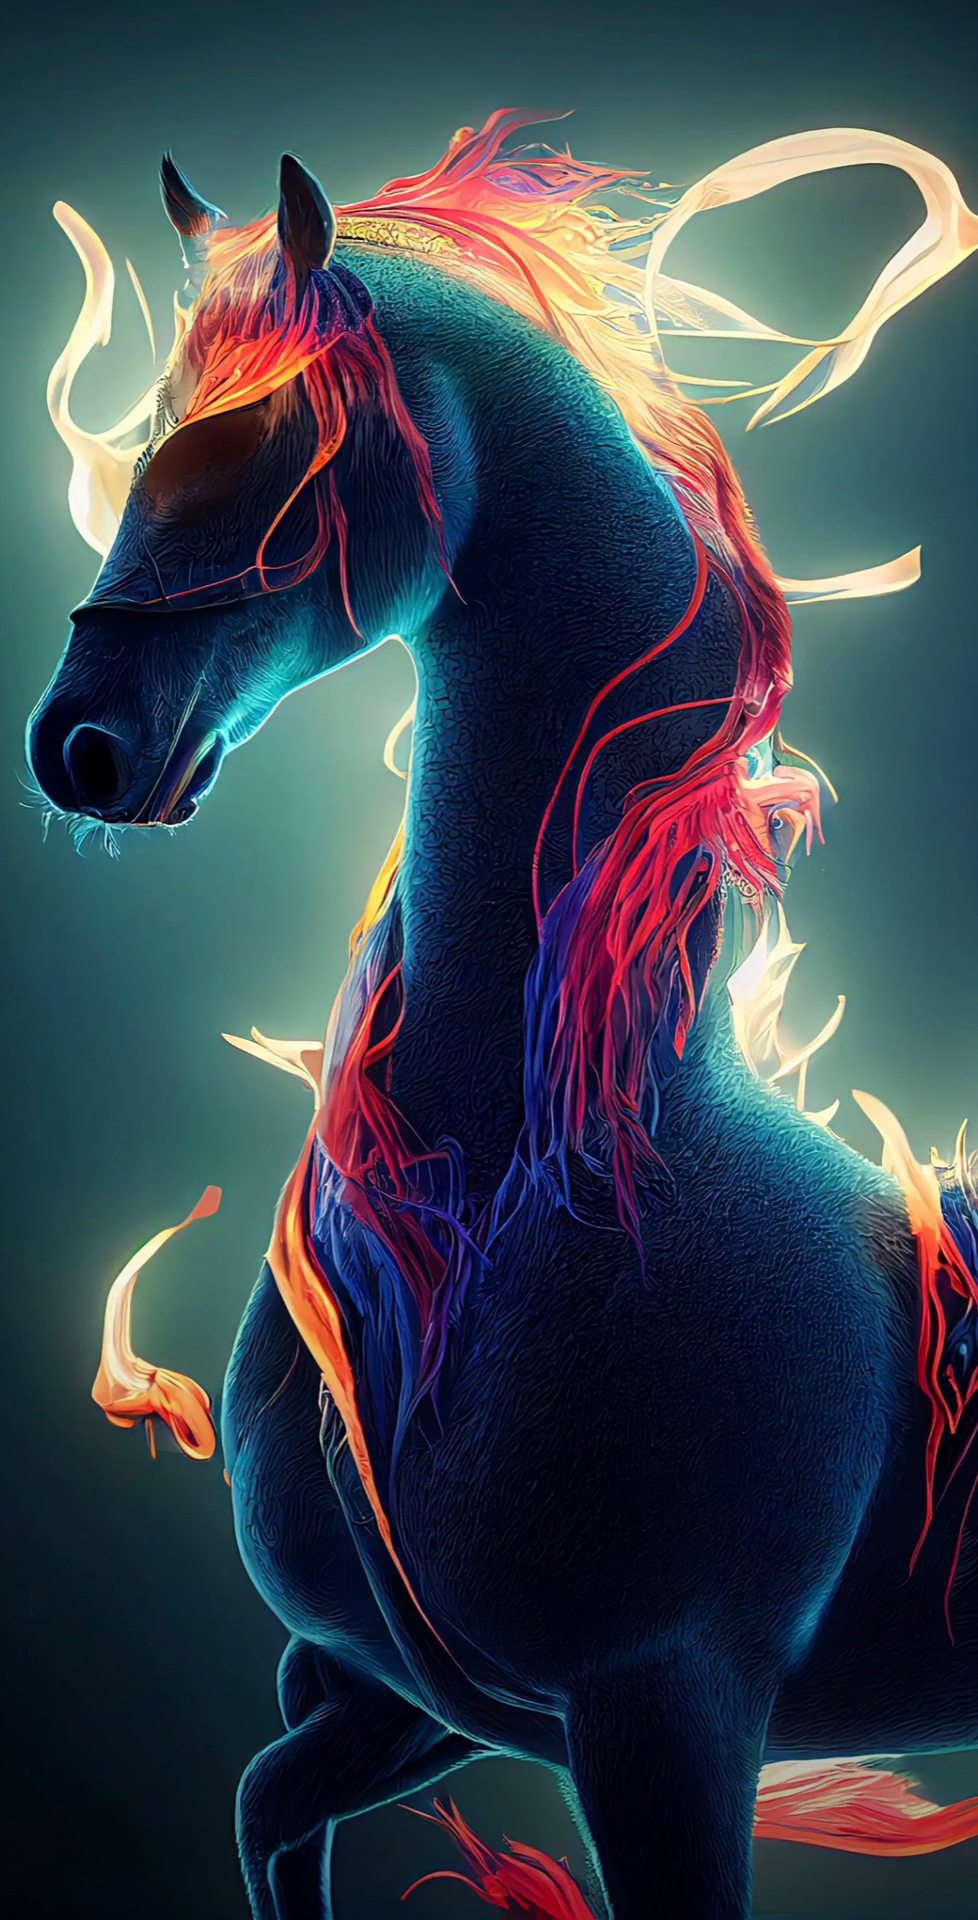 Hình ảnh ngựa lửa 3D đẹp nhất | VFO.VN